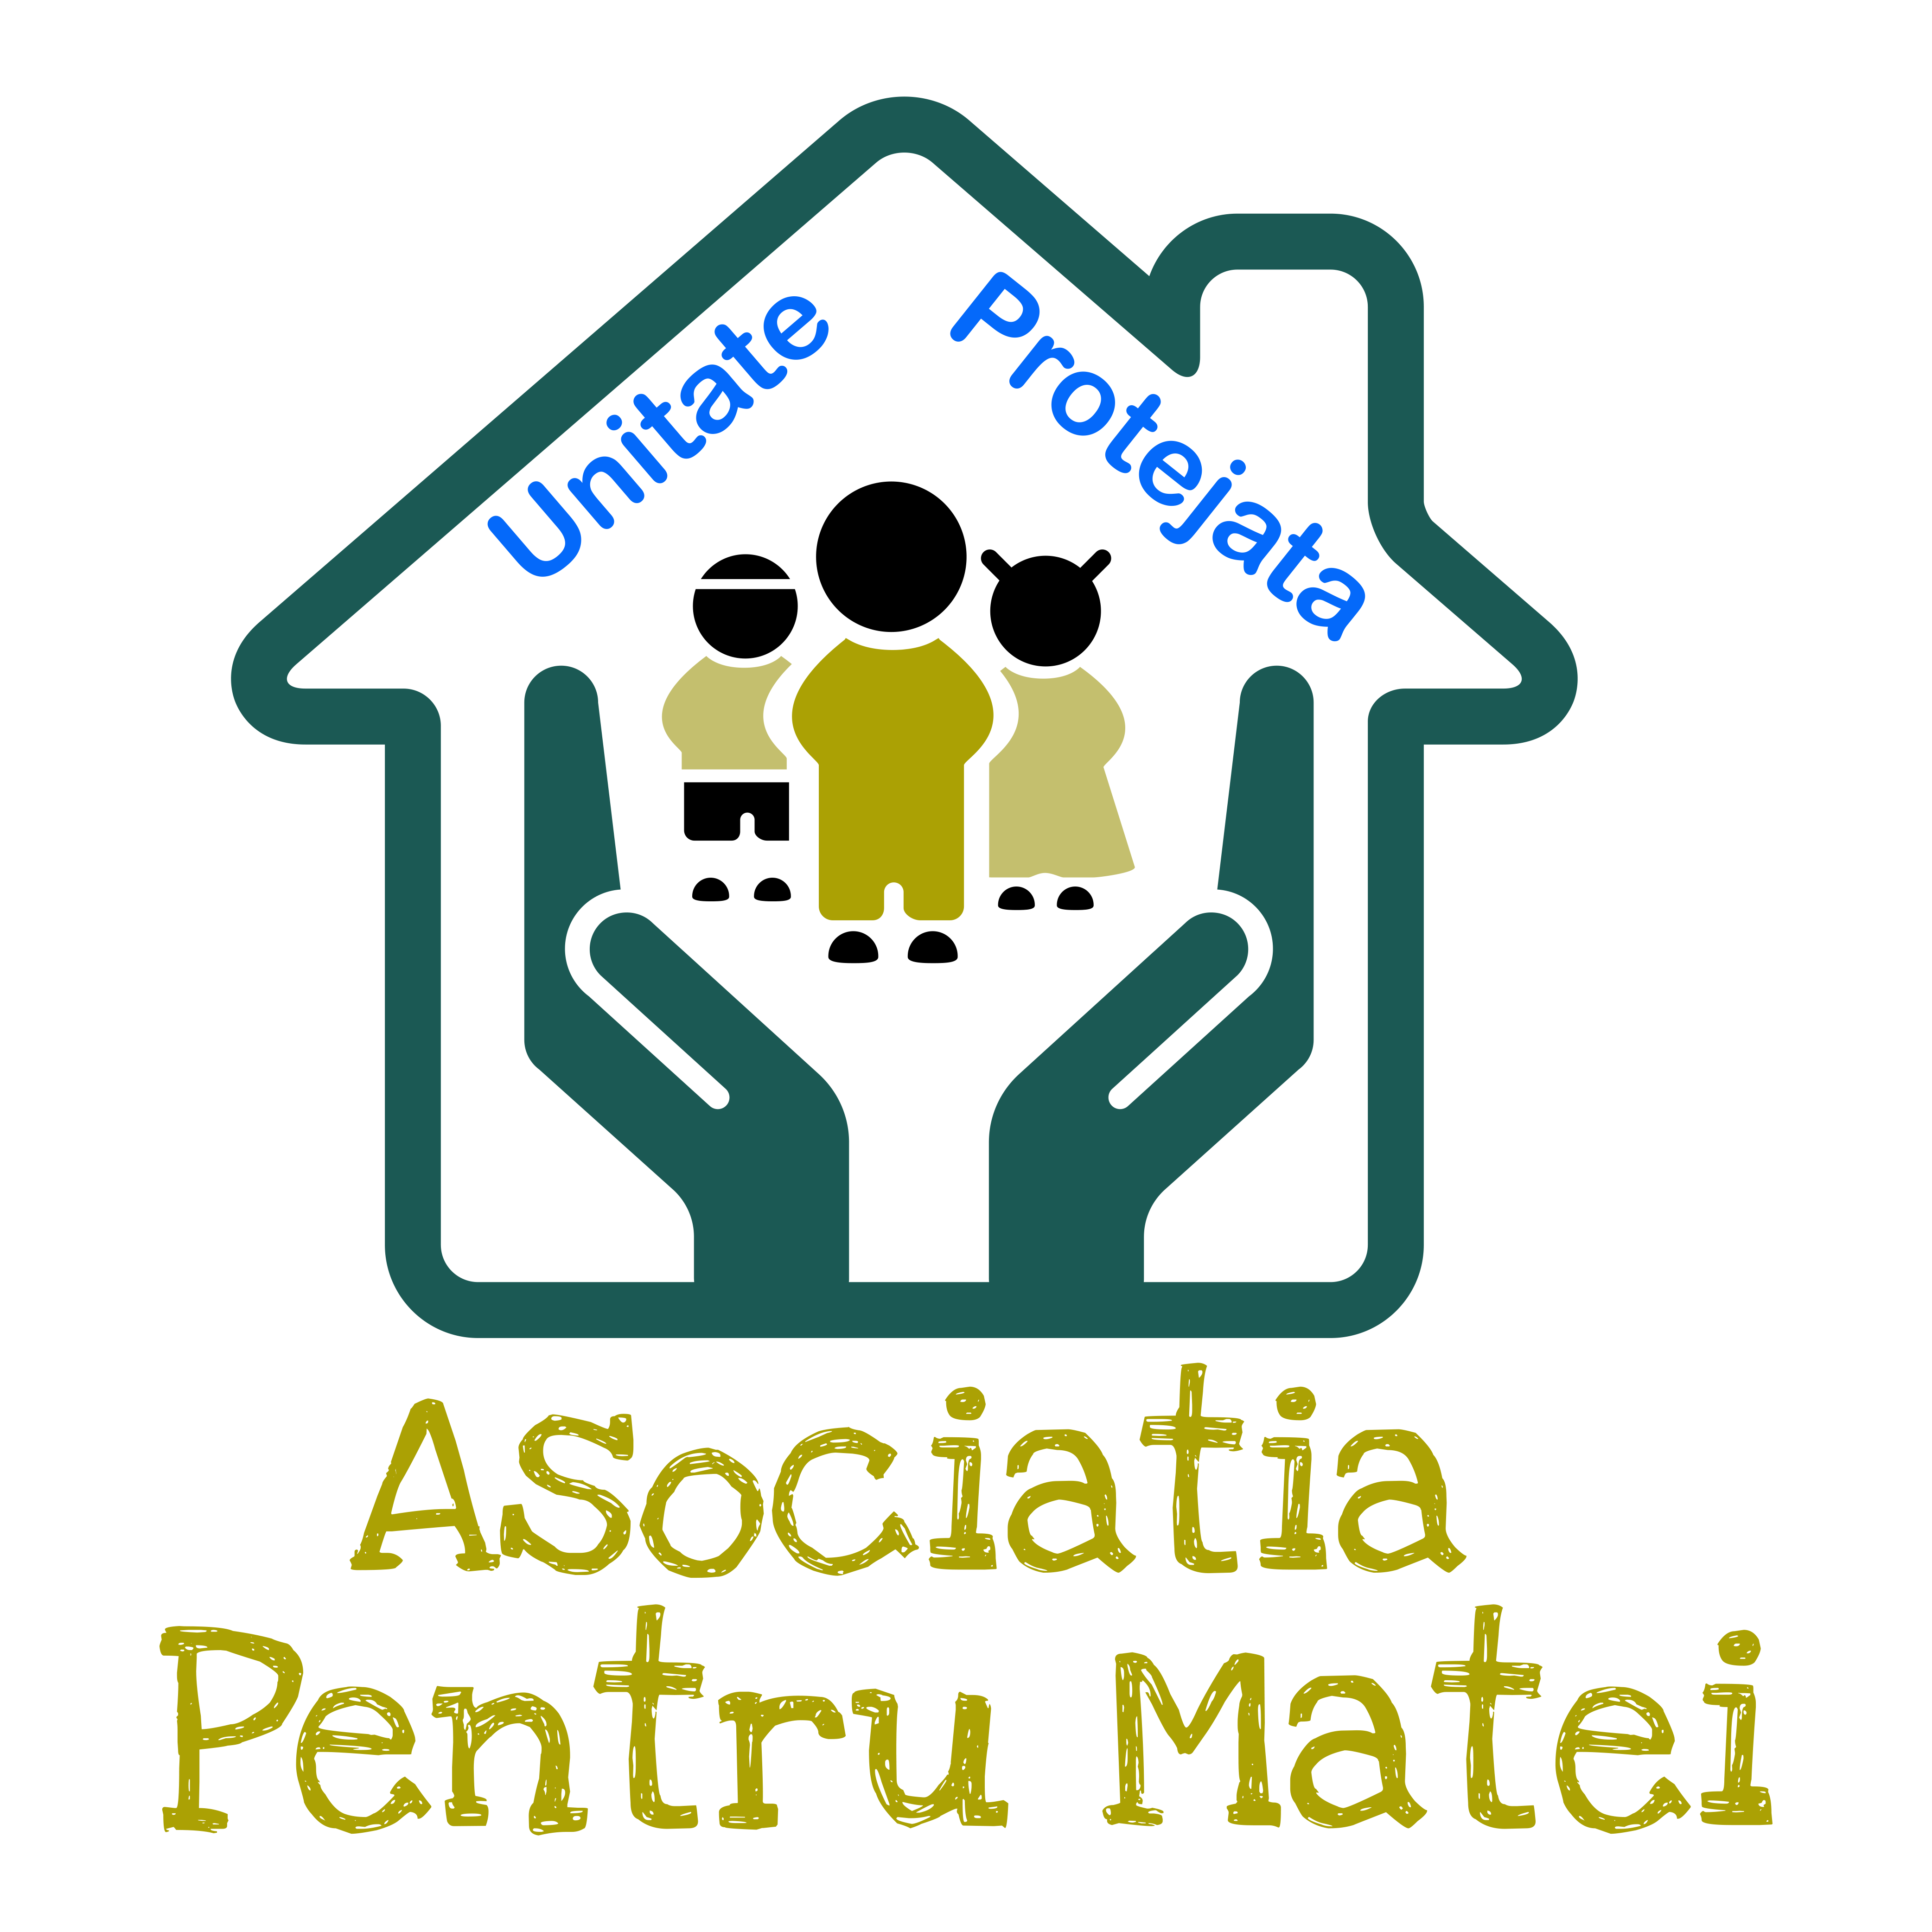 Asociatia PENTRU MATEI logo